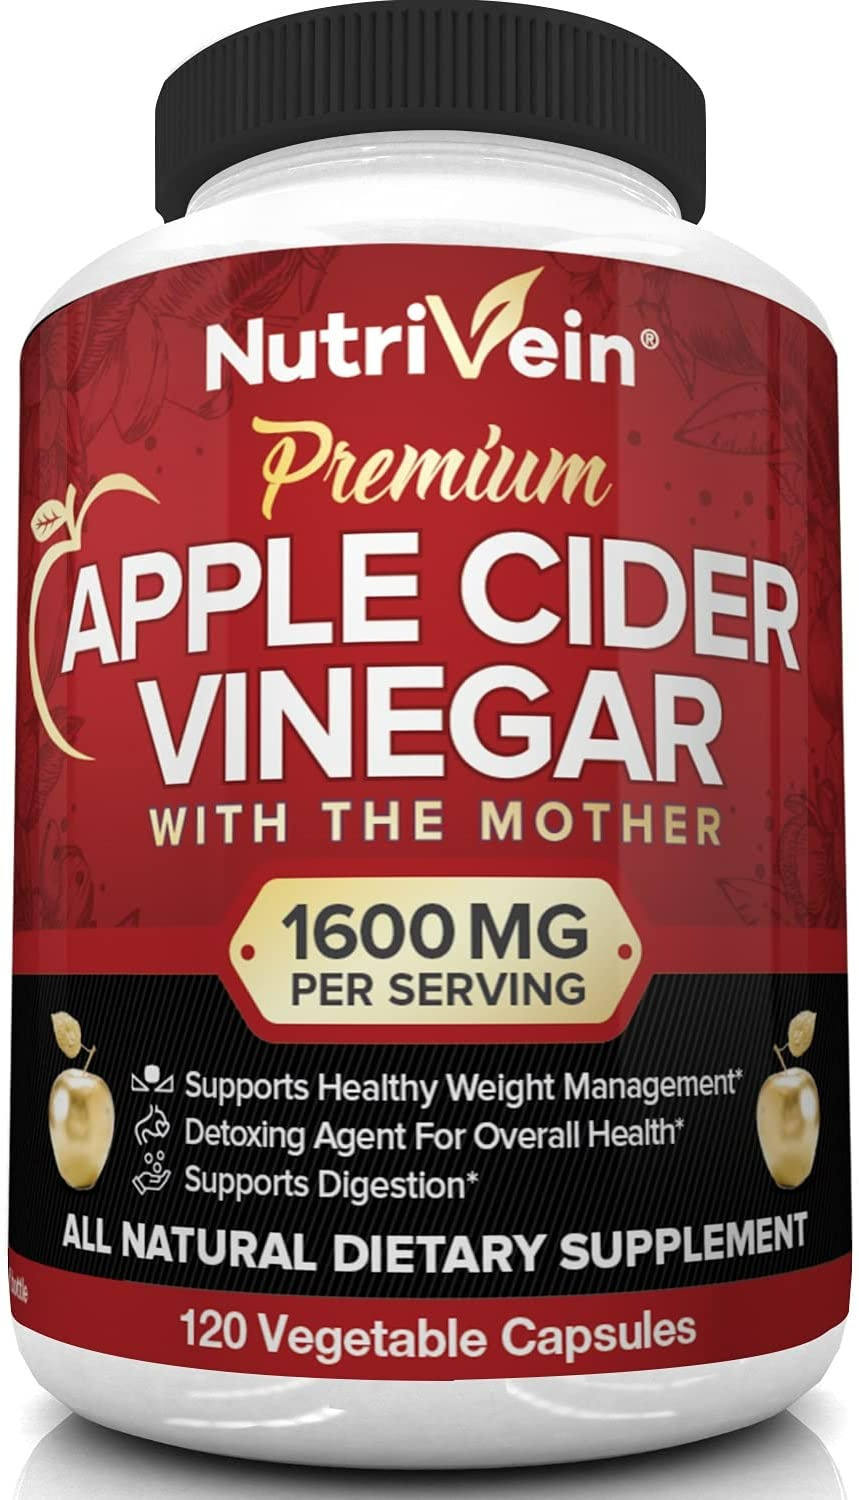 Nutrivein Apple Cider Vinegar Capsules - 120 Capsules-0